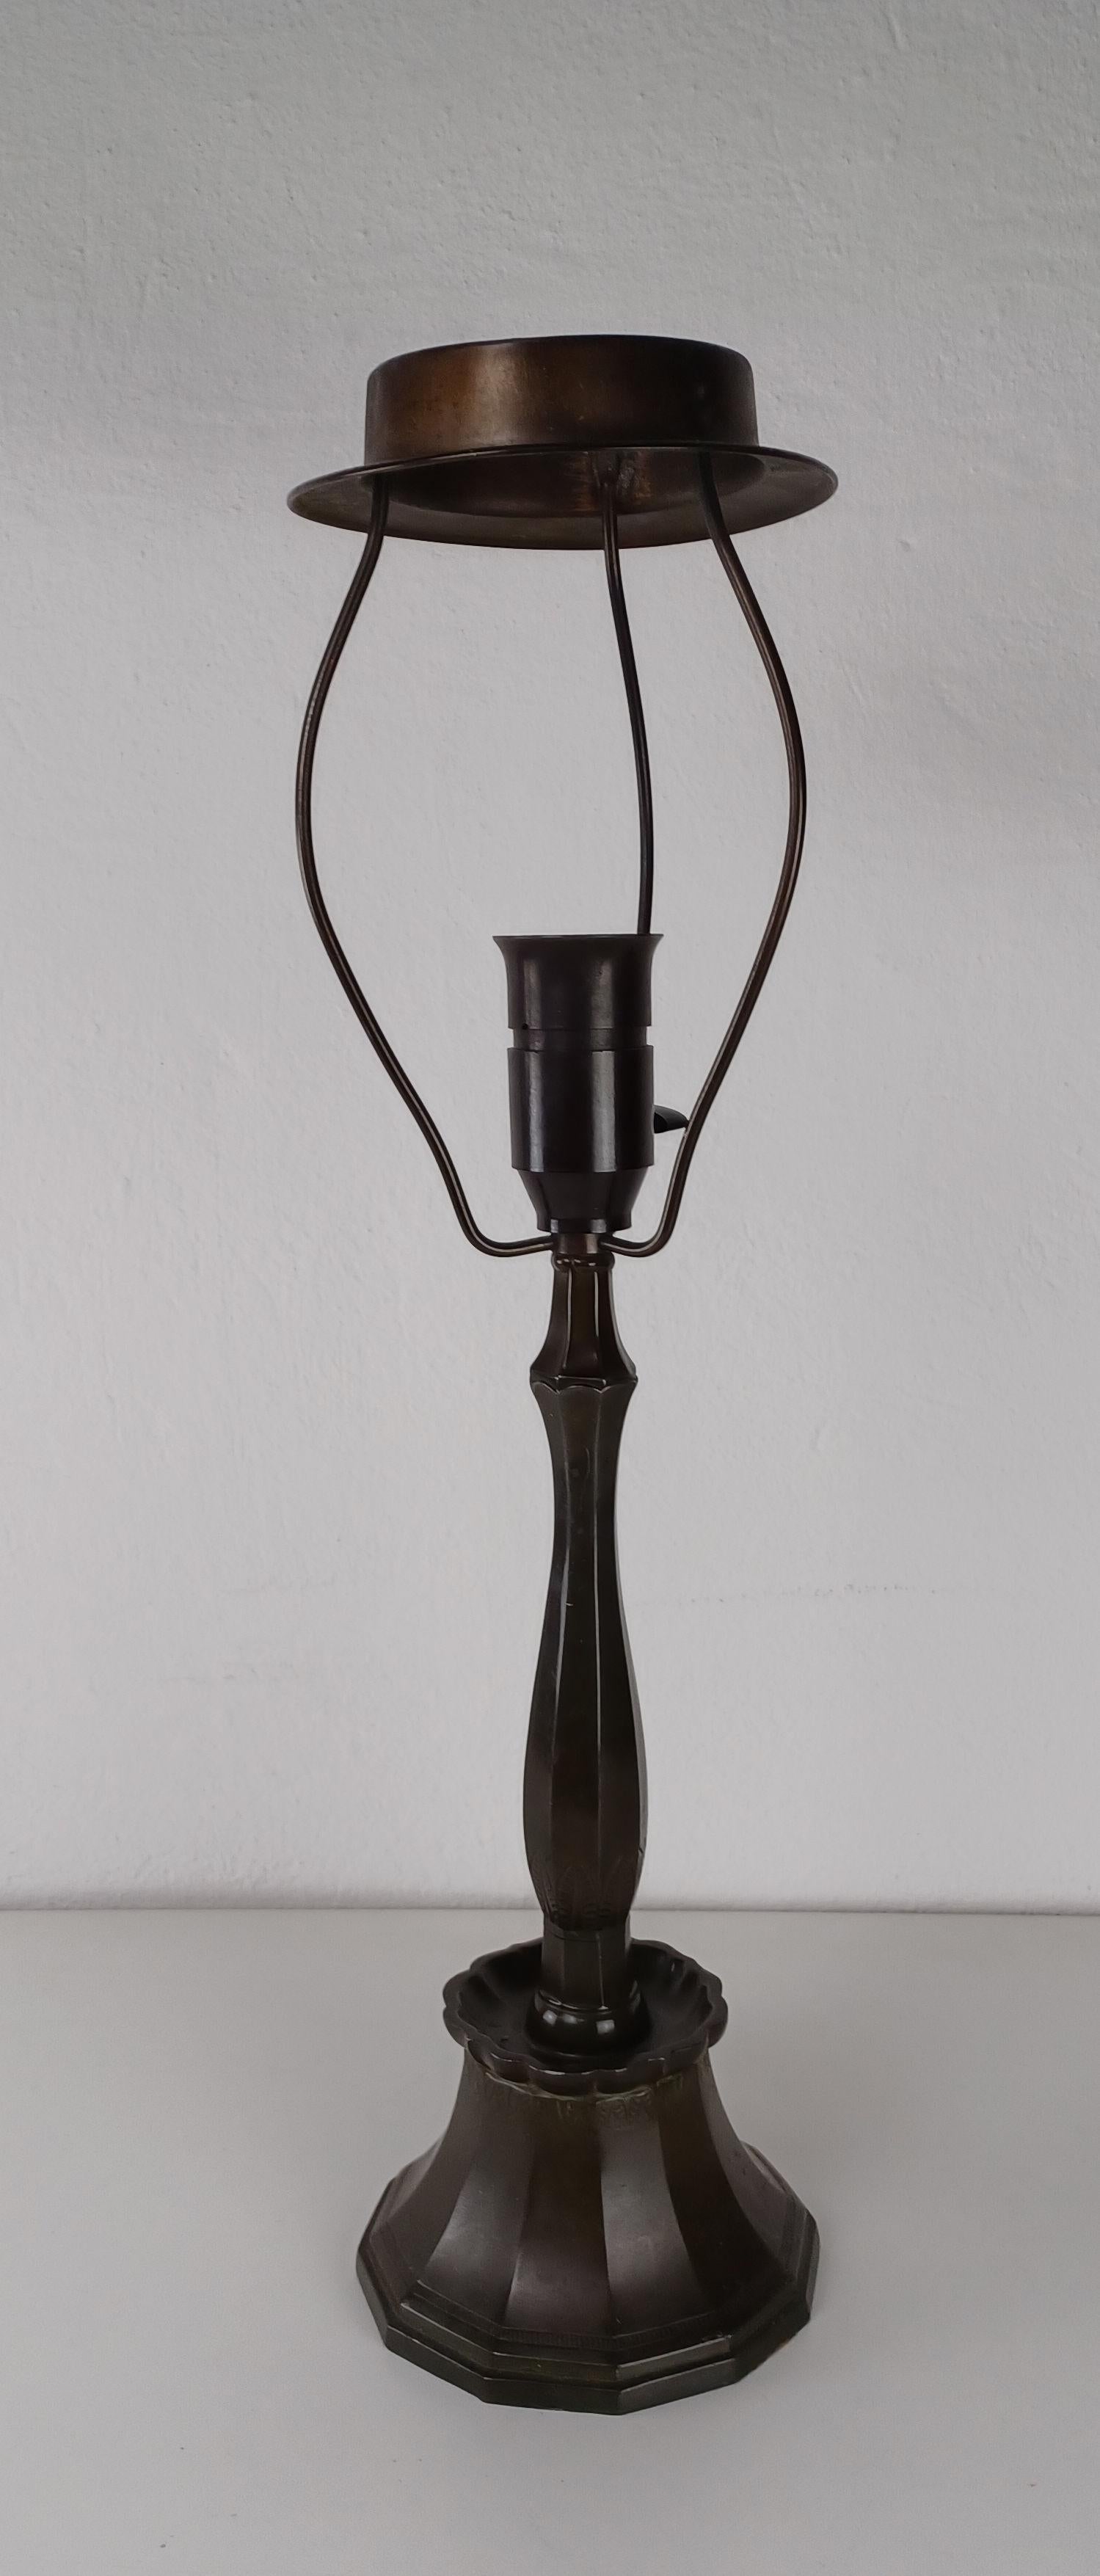 Lampe de table art déco danoise Just Andersen en métal disco par Just Andersen A/S dans les années 1930.

La lampe de table est fabriquée en métal Disco, un alliage de plomb et d'antimoine, invention personnelle d'Andersen et nommée d'après la baie